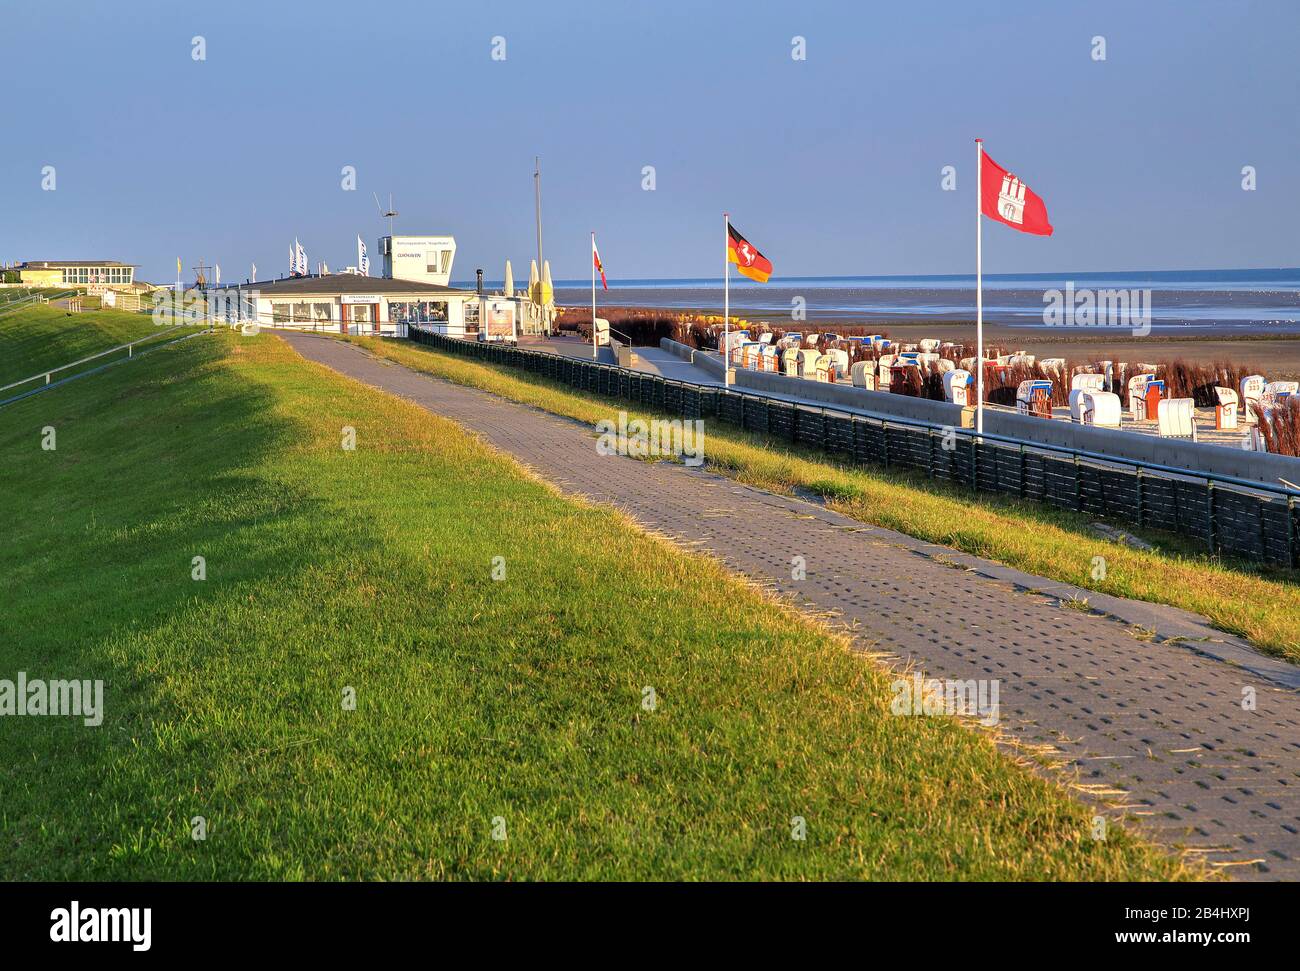 Deichpromenade mit Strand- und Strandliegen im Landkreis Döse, Nordseebad Cuxhaven, Elbmündungsgebiet, Nordsee, Nordseeküste, Niedersachsen, Deutschland Stockfoto